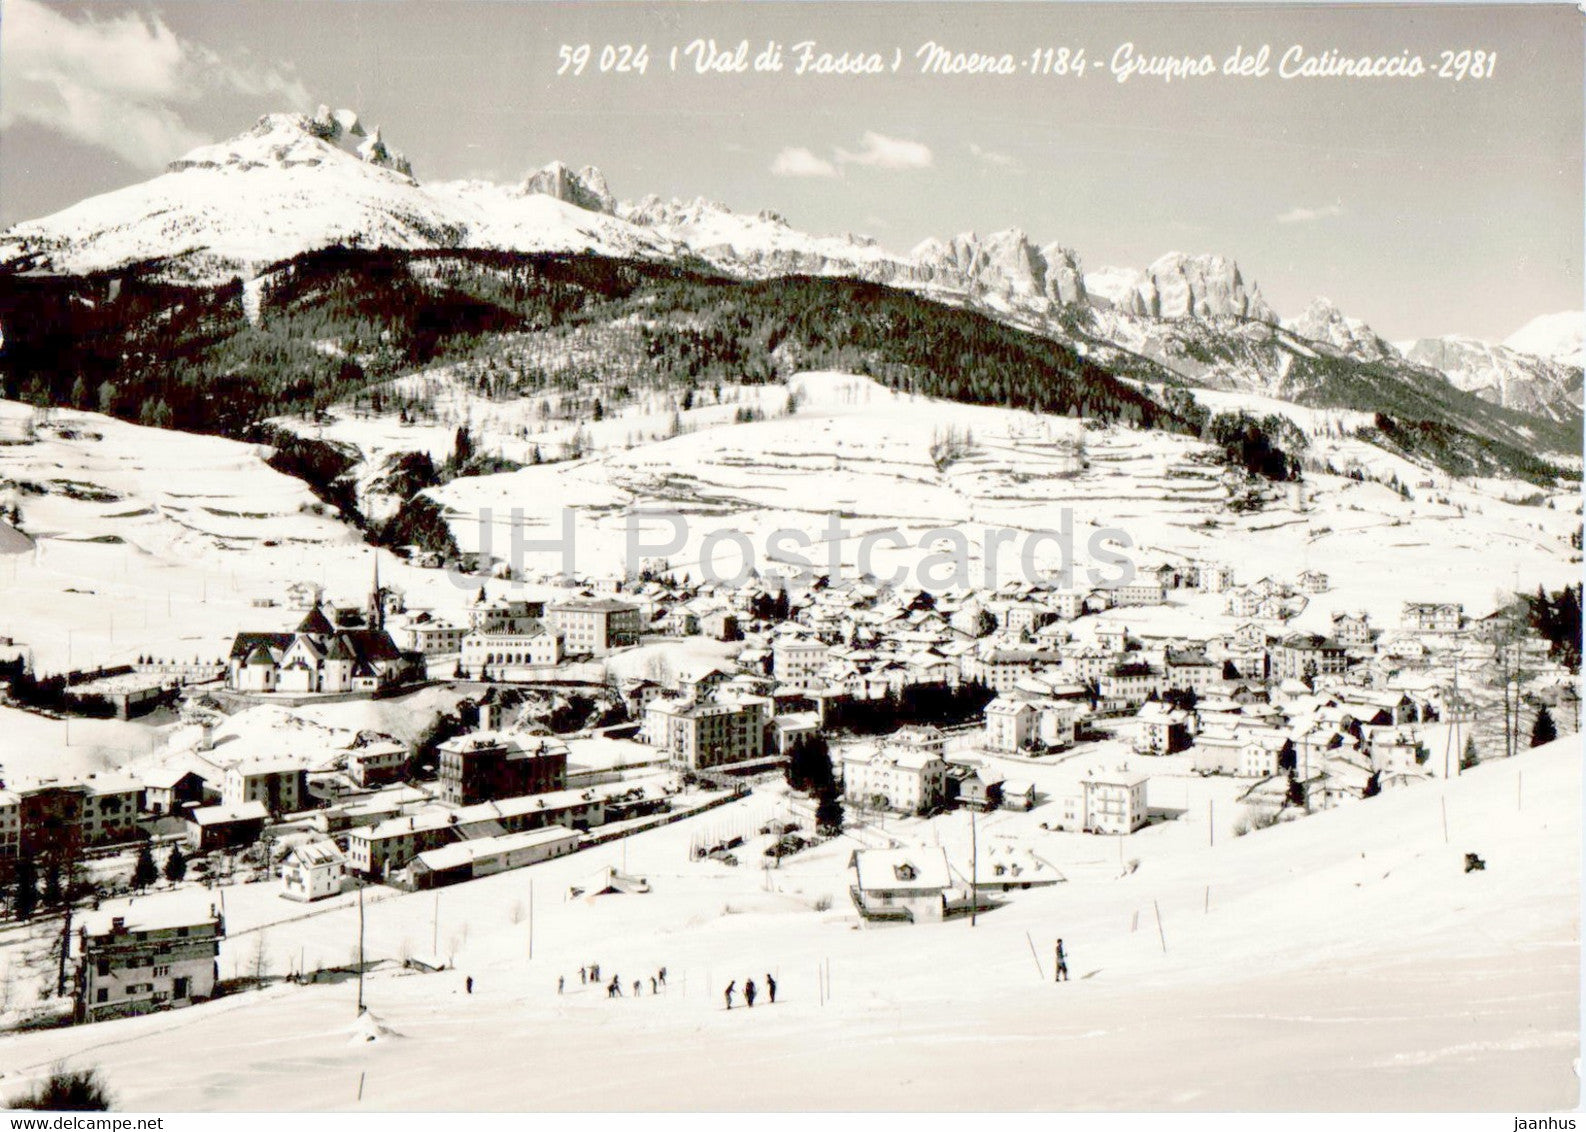 Val di Fassa - Moena - Gruppo del Catinaccio 2981 - Italy - unused - JH Postcards